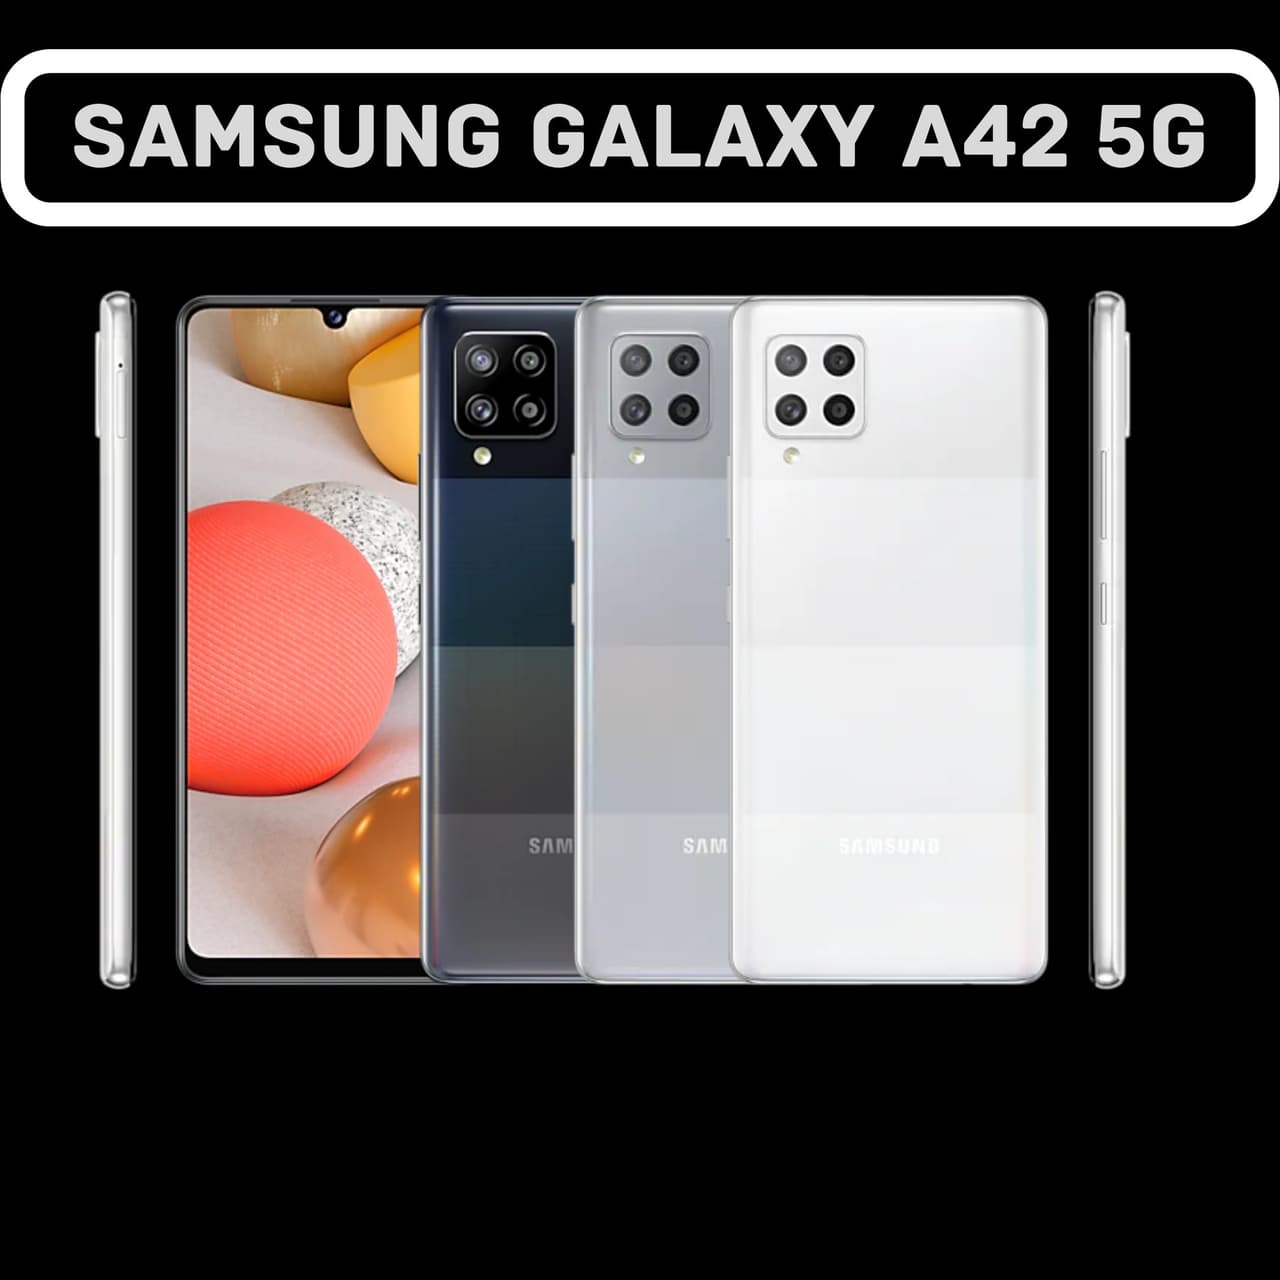 Samsung Galaxy A42 5G là smartphone nhanh nhất trong dòng Galaxy A